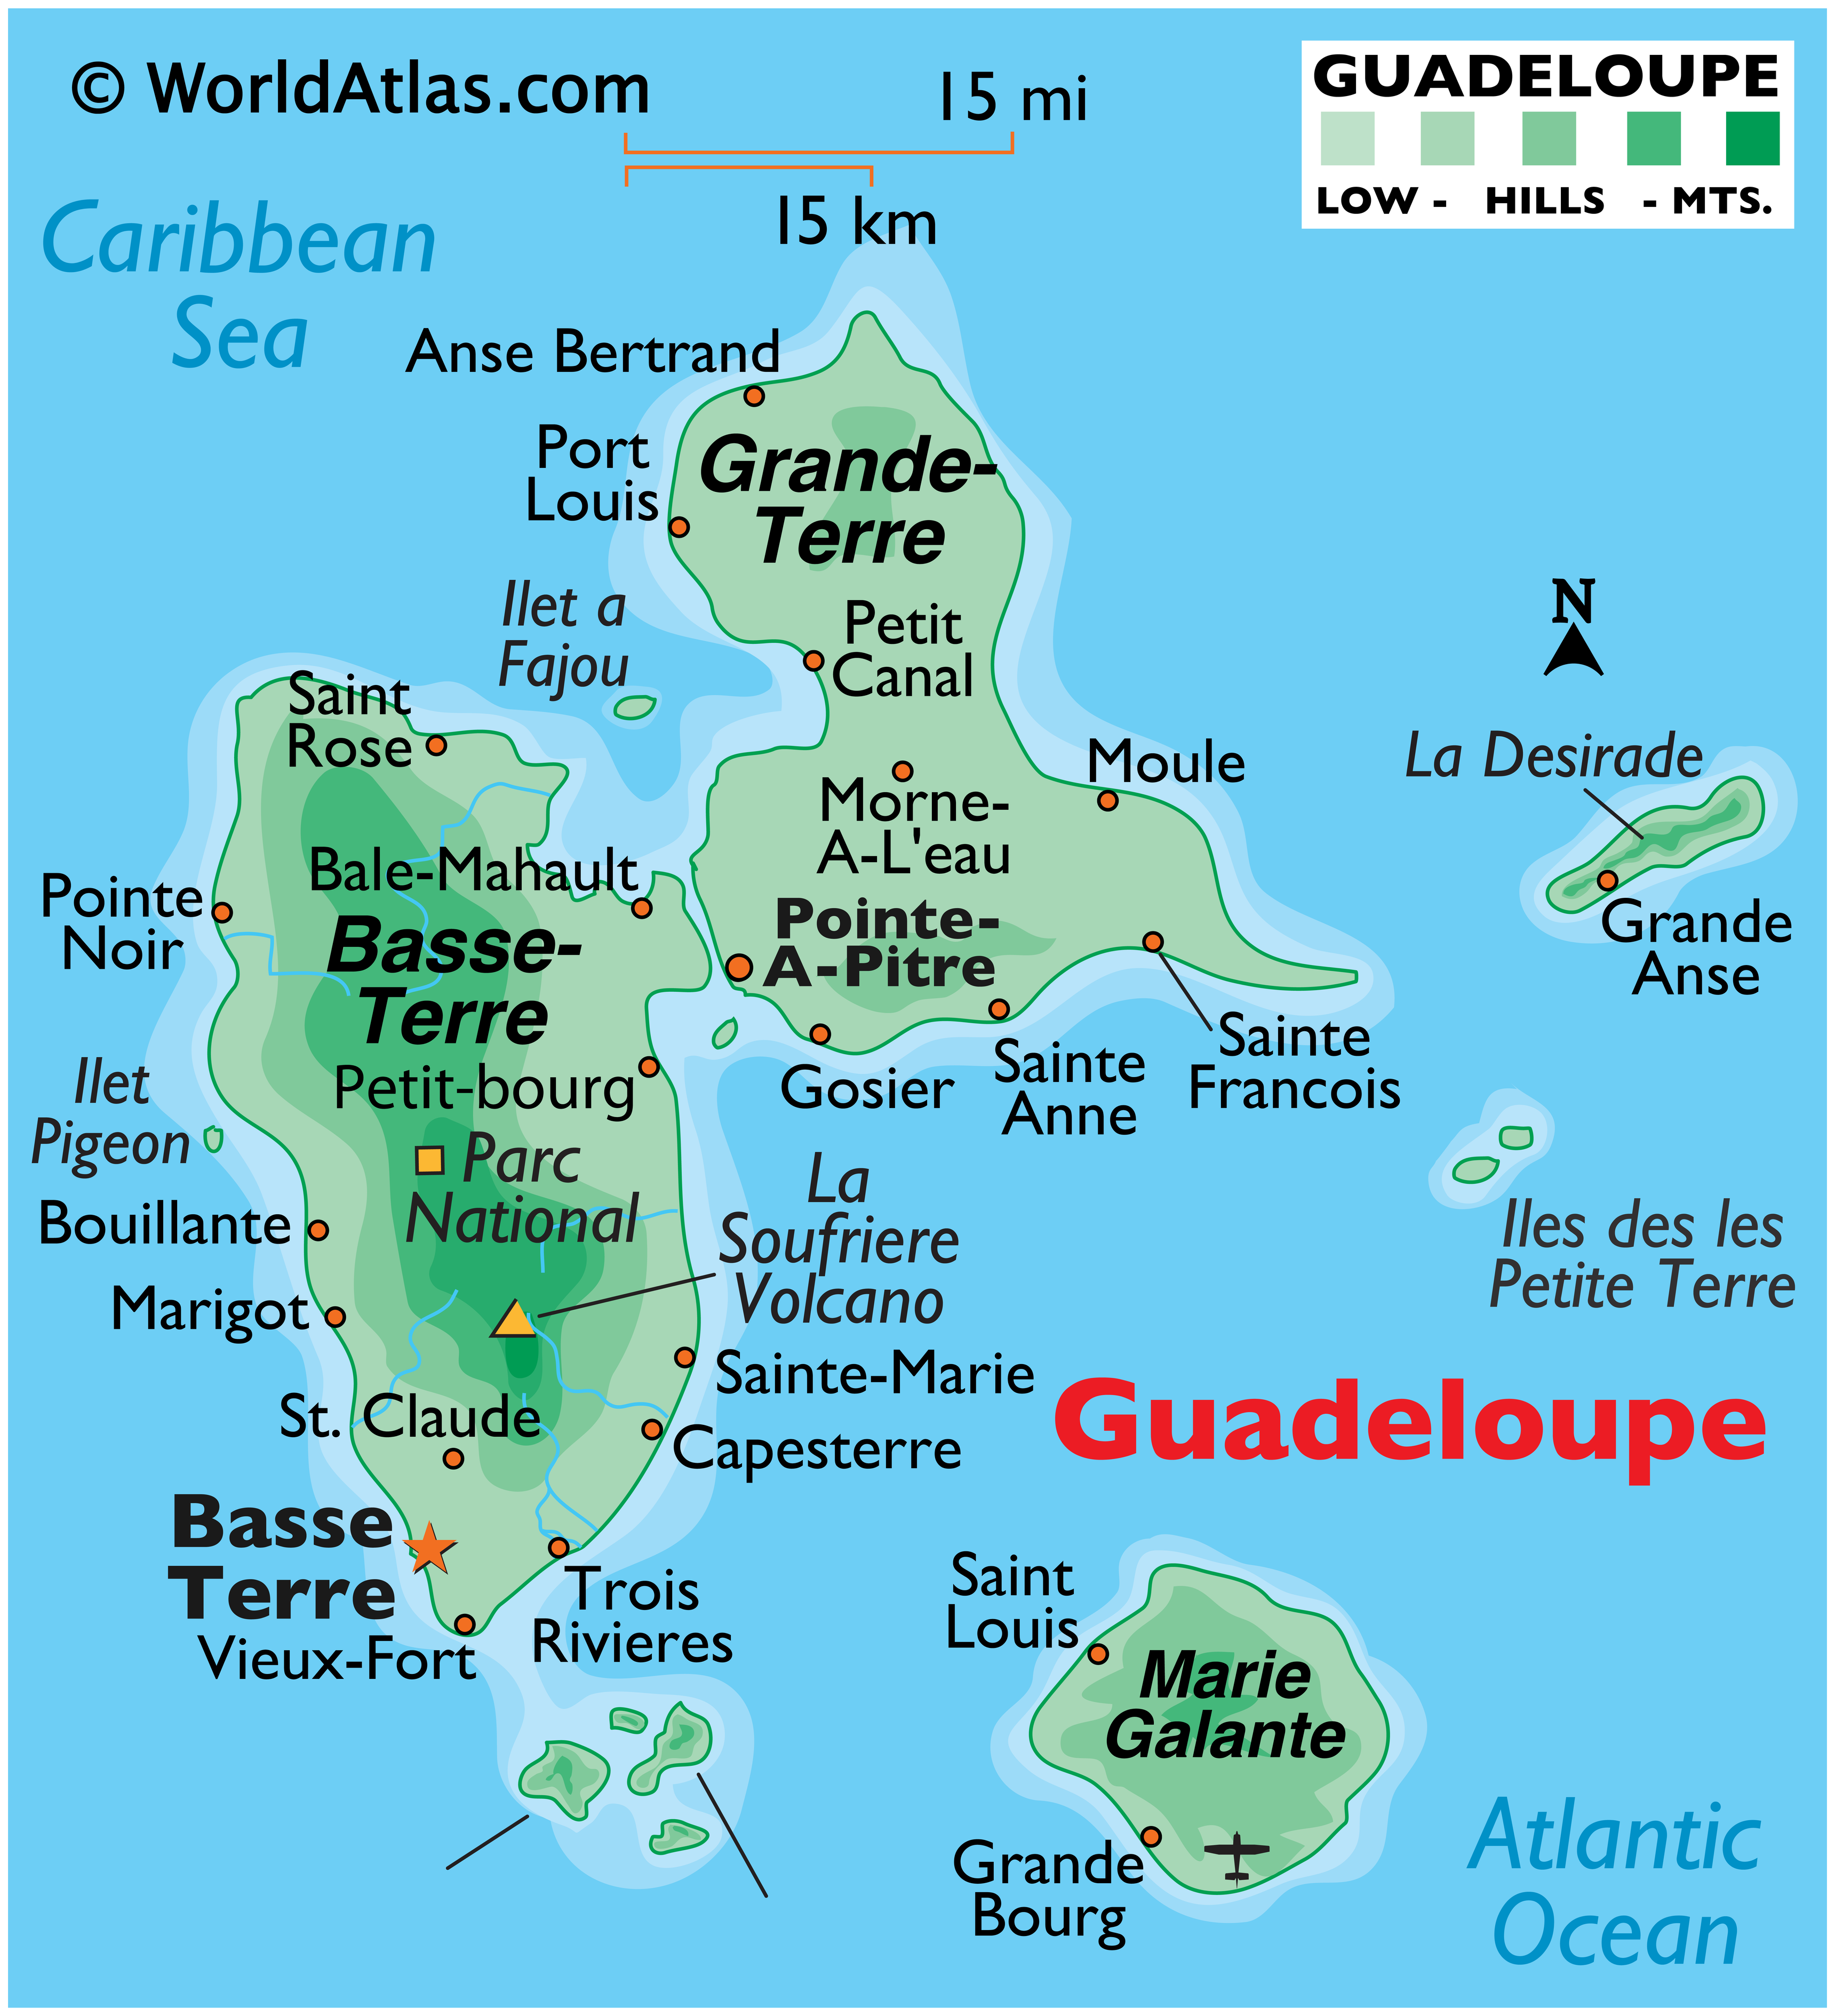 File:Map-guadeloupe.jpg - Wikimedia Commons